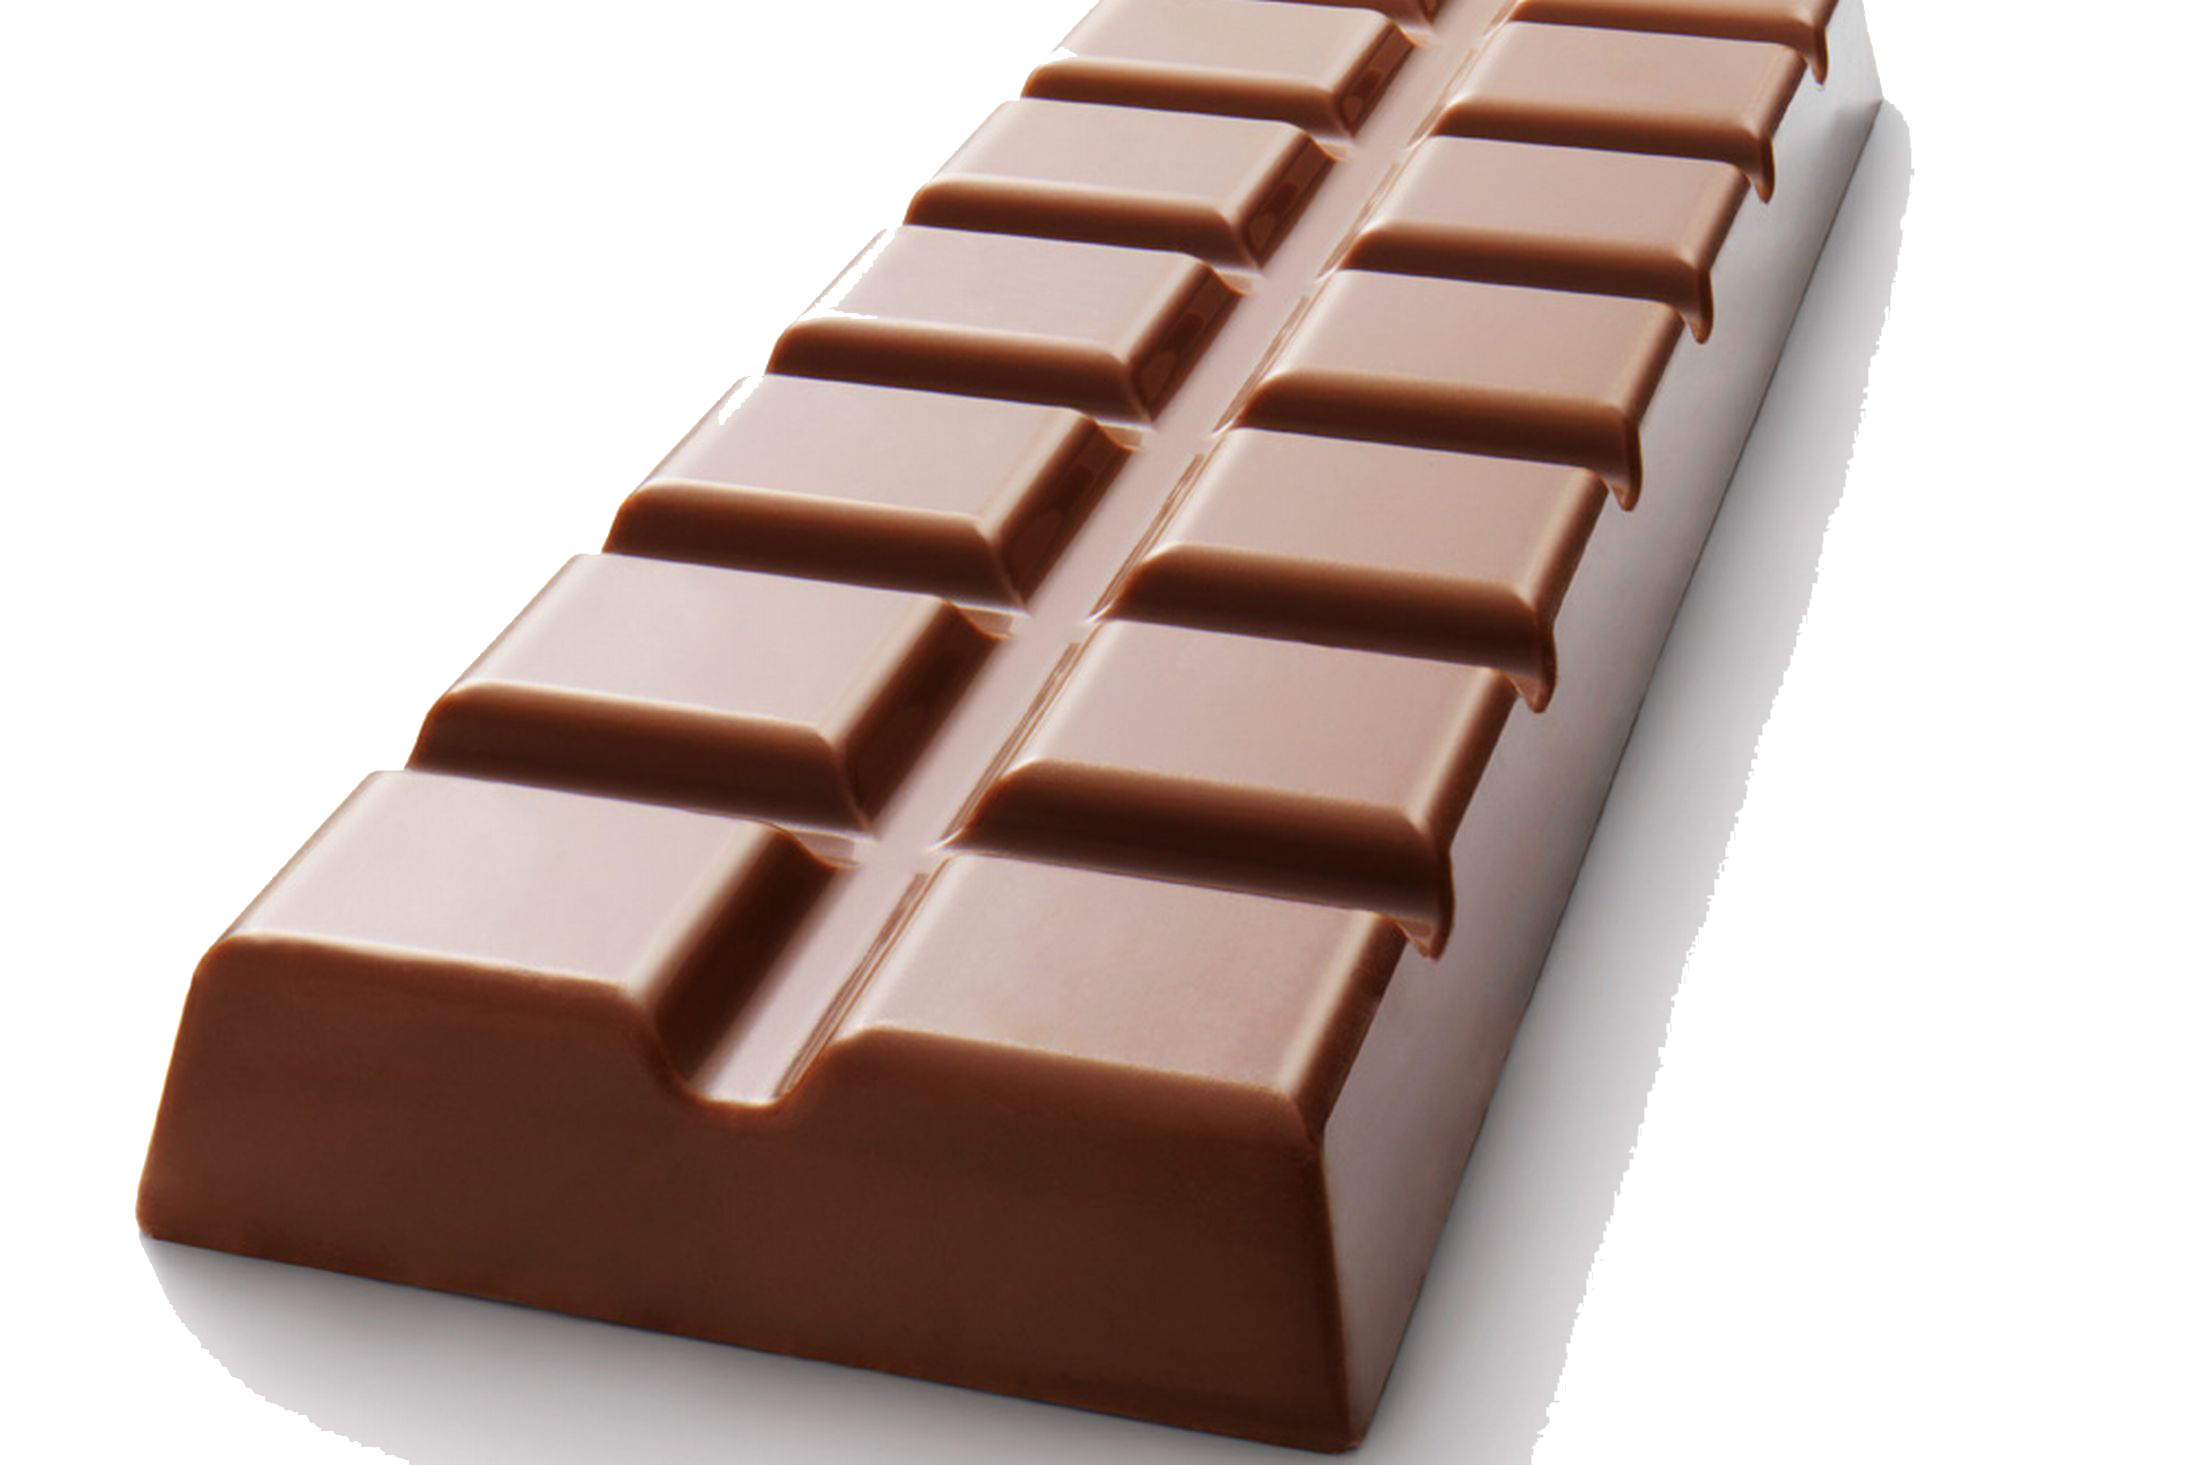 Плиточный шоколад. Молочный шоколад. Шоколадная плитка. Плитка шоколада на прозрачном фоне.